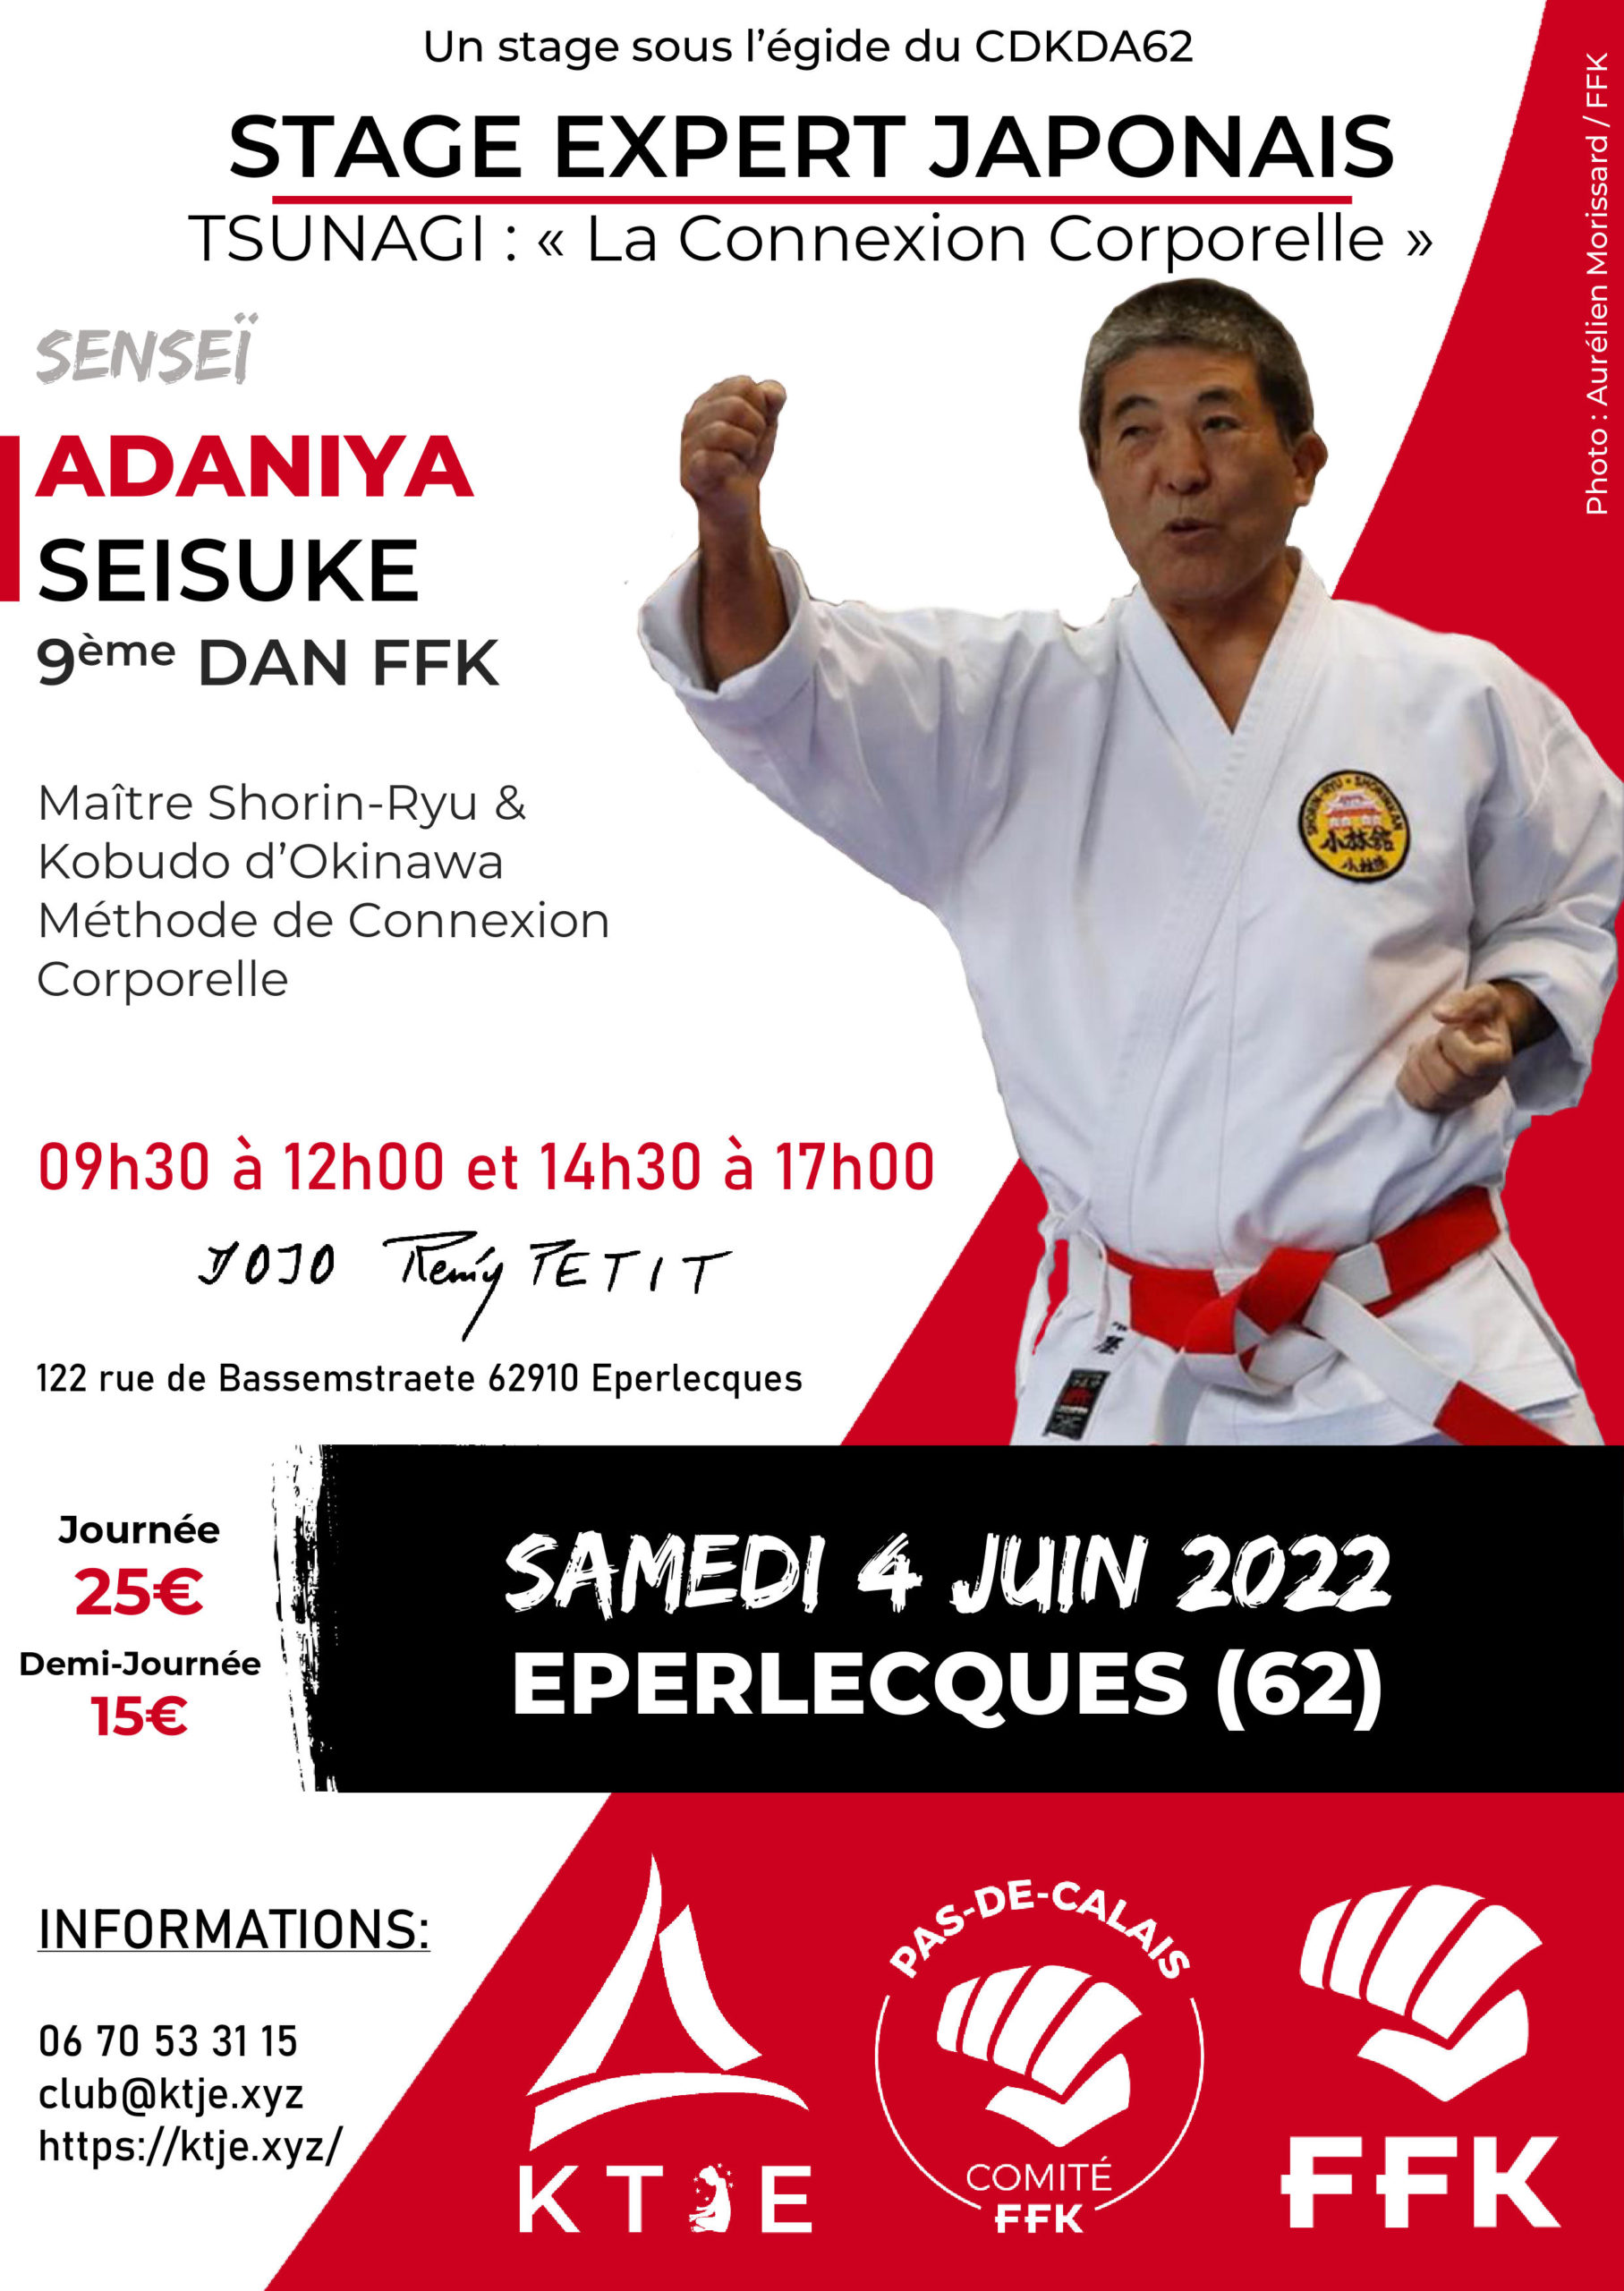 Affiche du stage expert japonais à Eperlecques avec Adaniya Seisuke sous l'egide du CDKDA62.